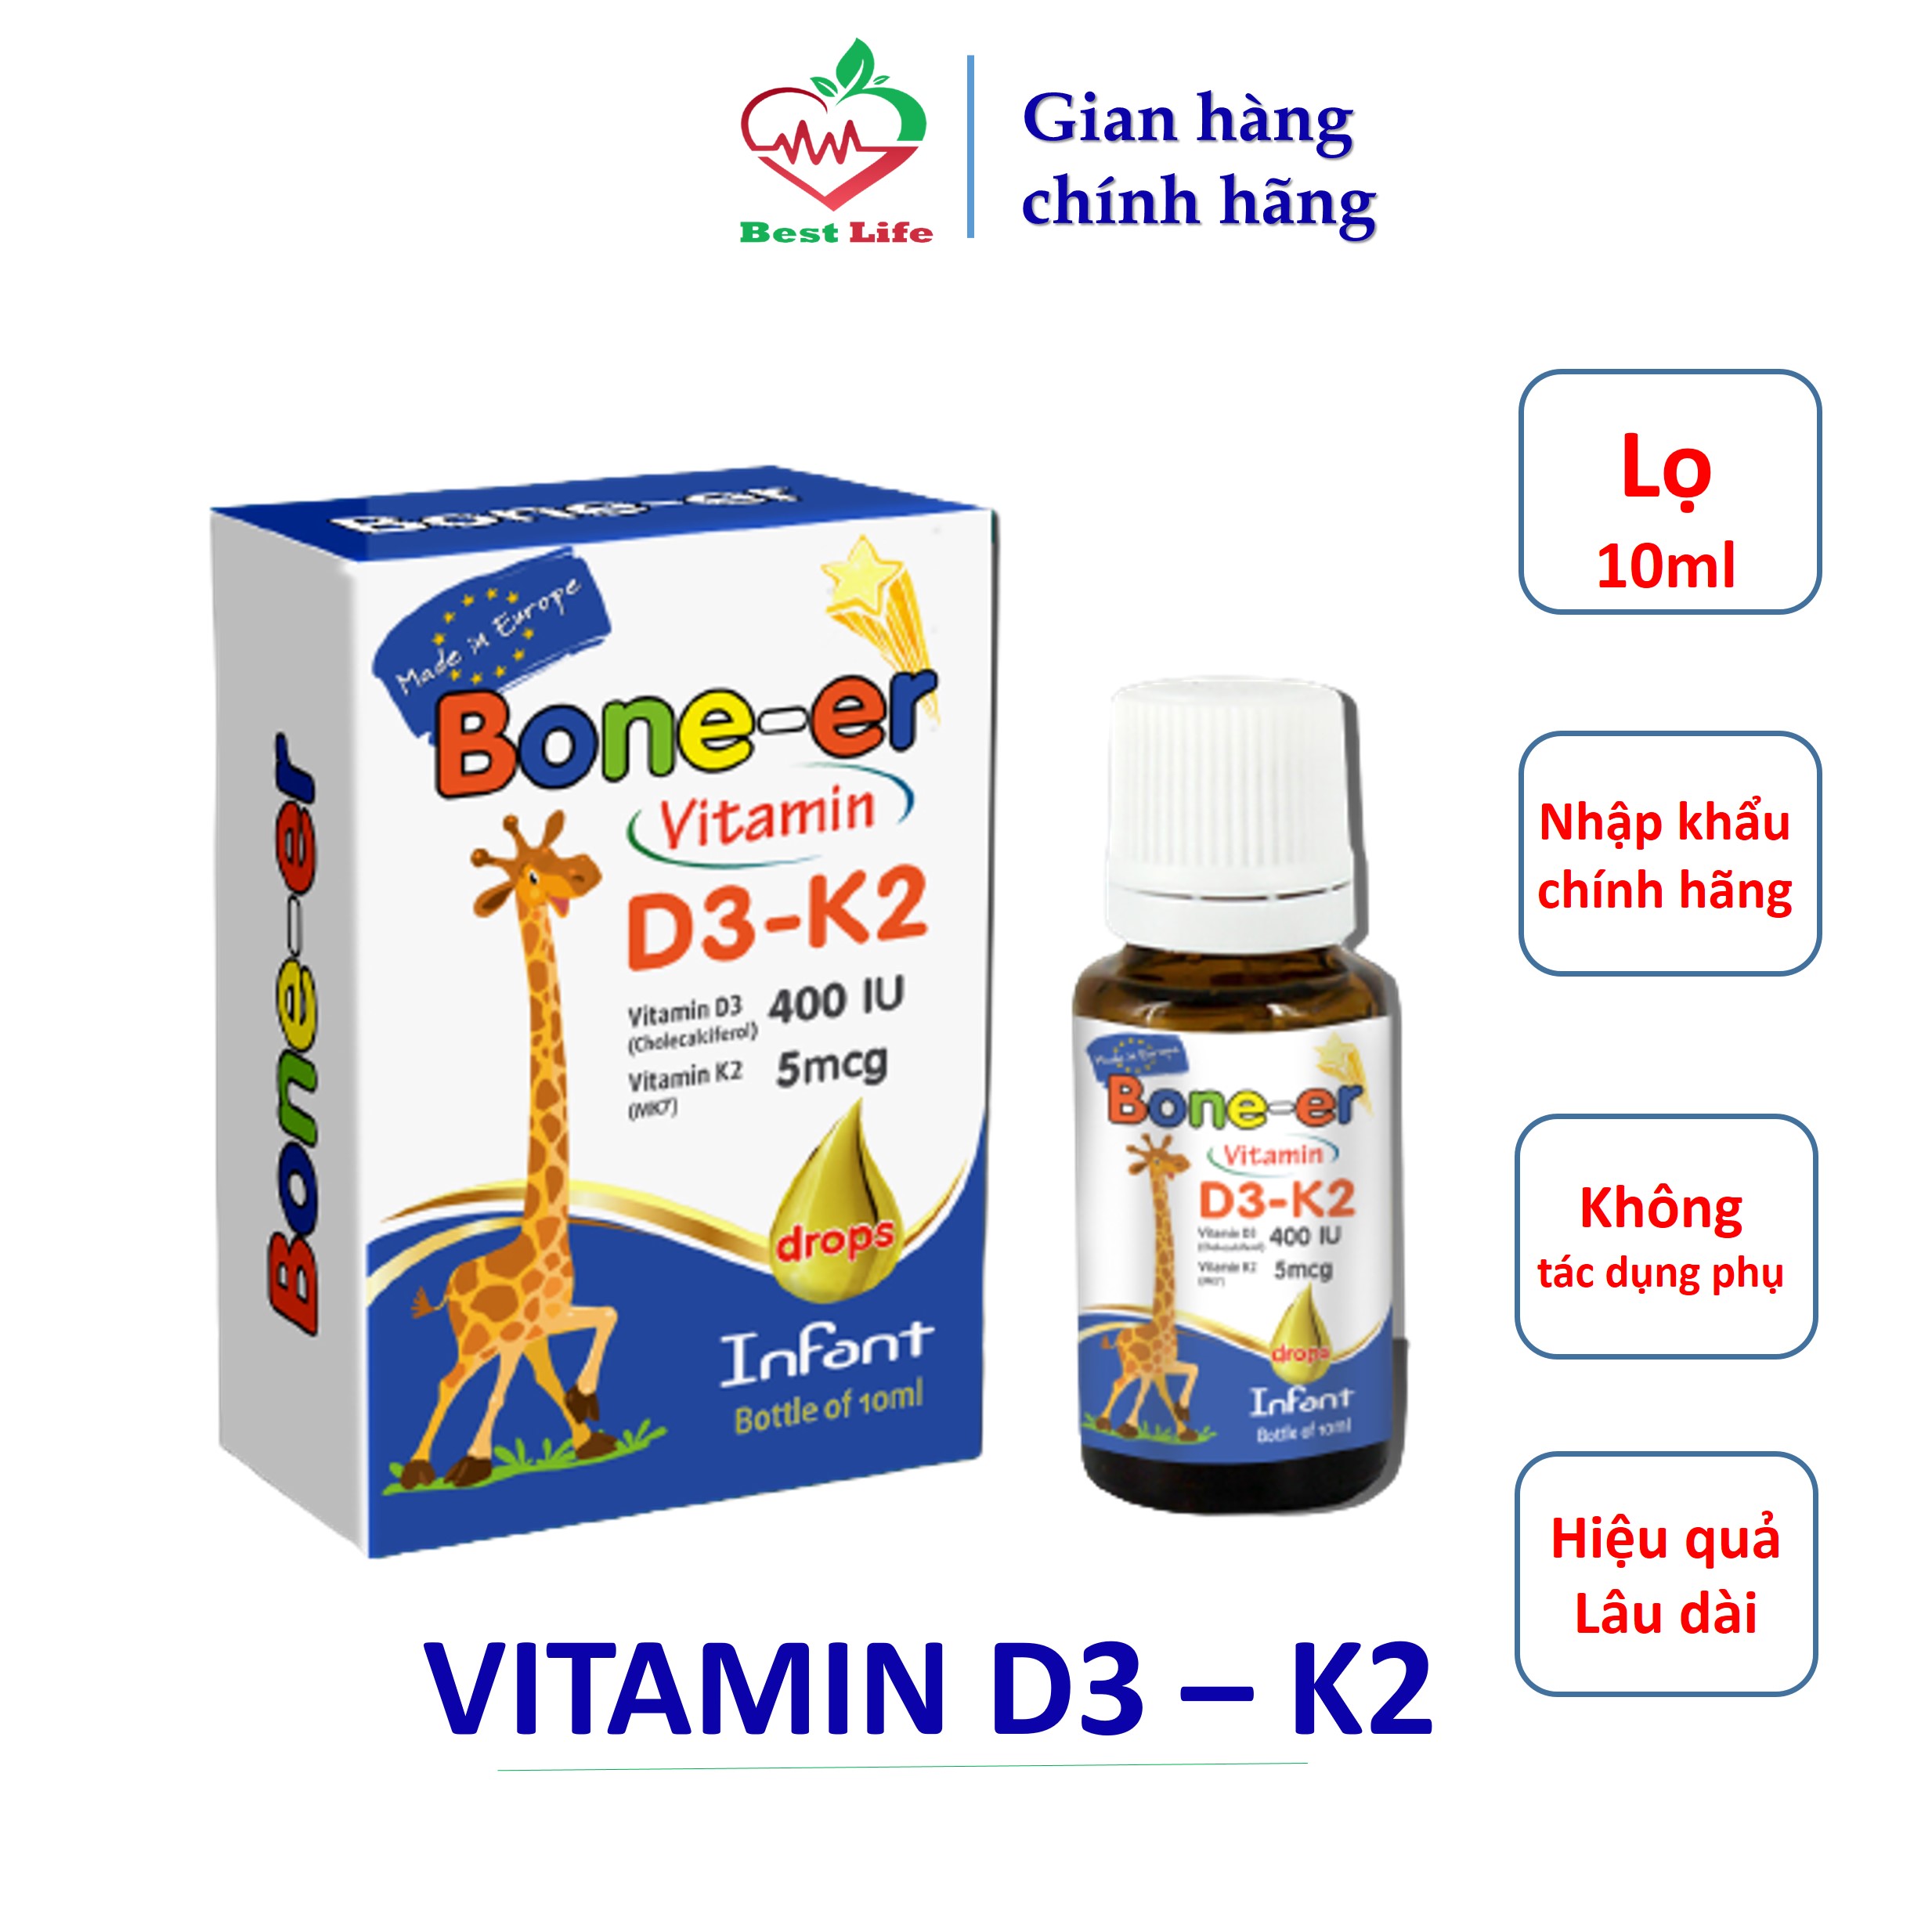 Vitamin D3 nhỏ giọt Bone-er bổ sung vitamin D3 và K2 cho bé từ 0 tháng